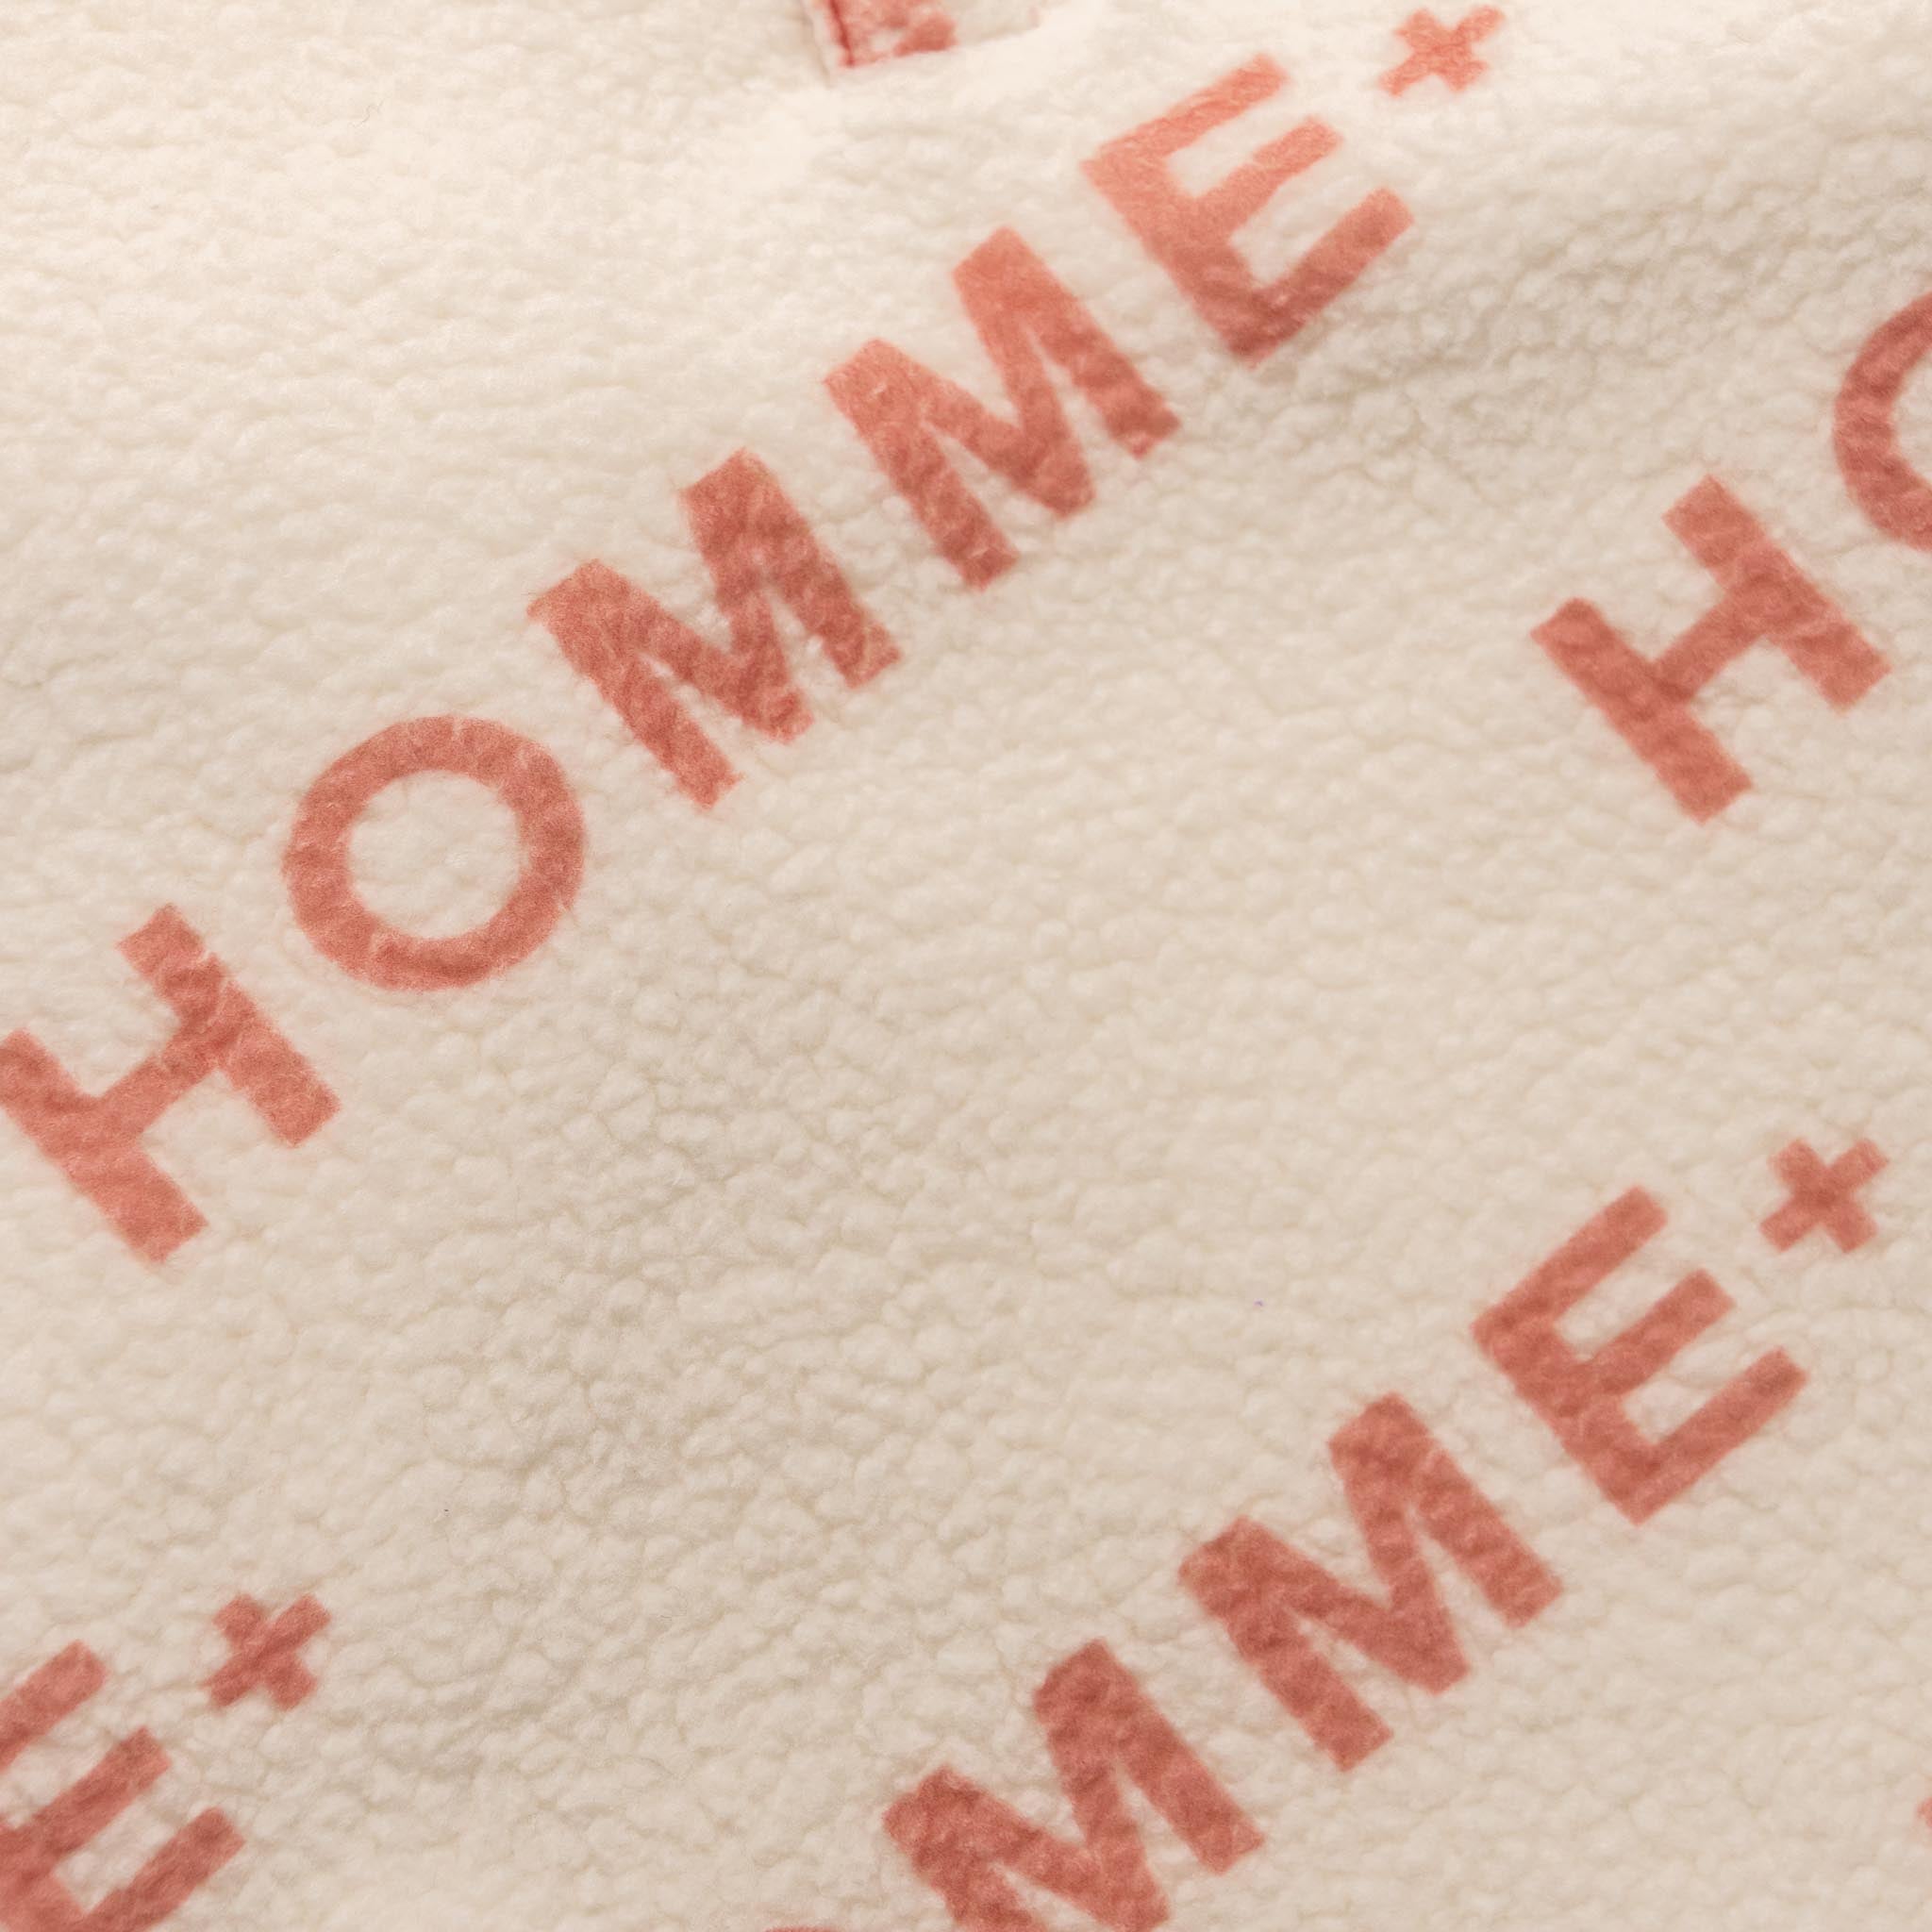 HOMME+ Polar Fleece Logo Pullover Red